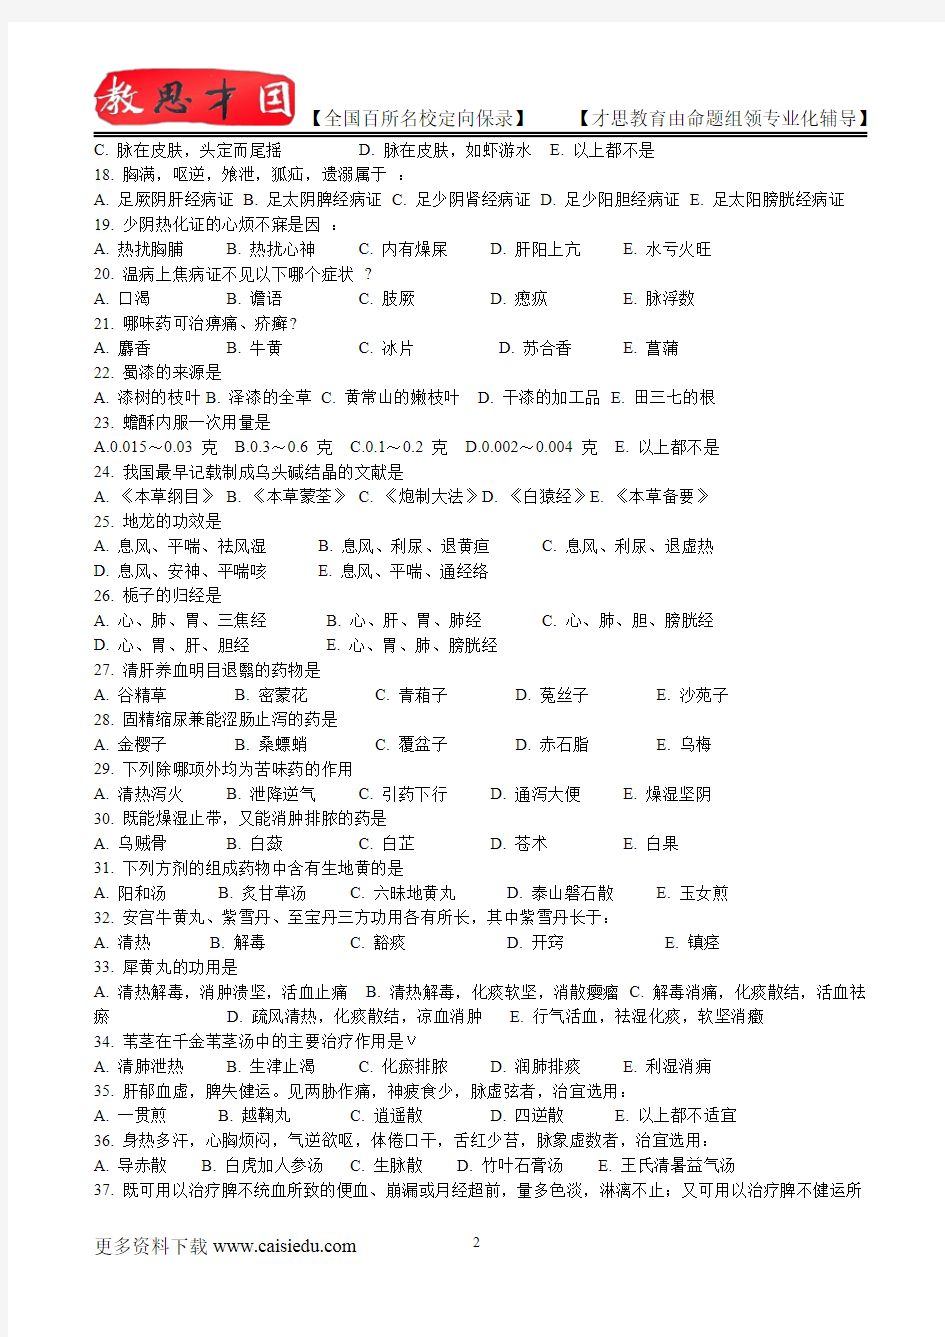 2016年北京中医药大学专业考研复试笔记,复试真题,考研大纲,考研真题,考研经验